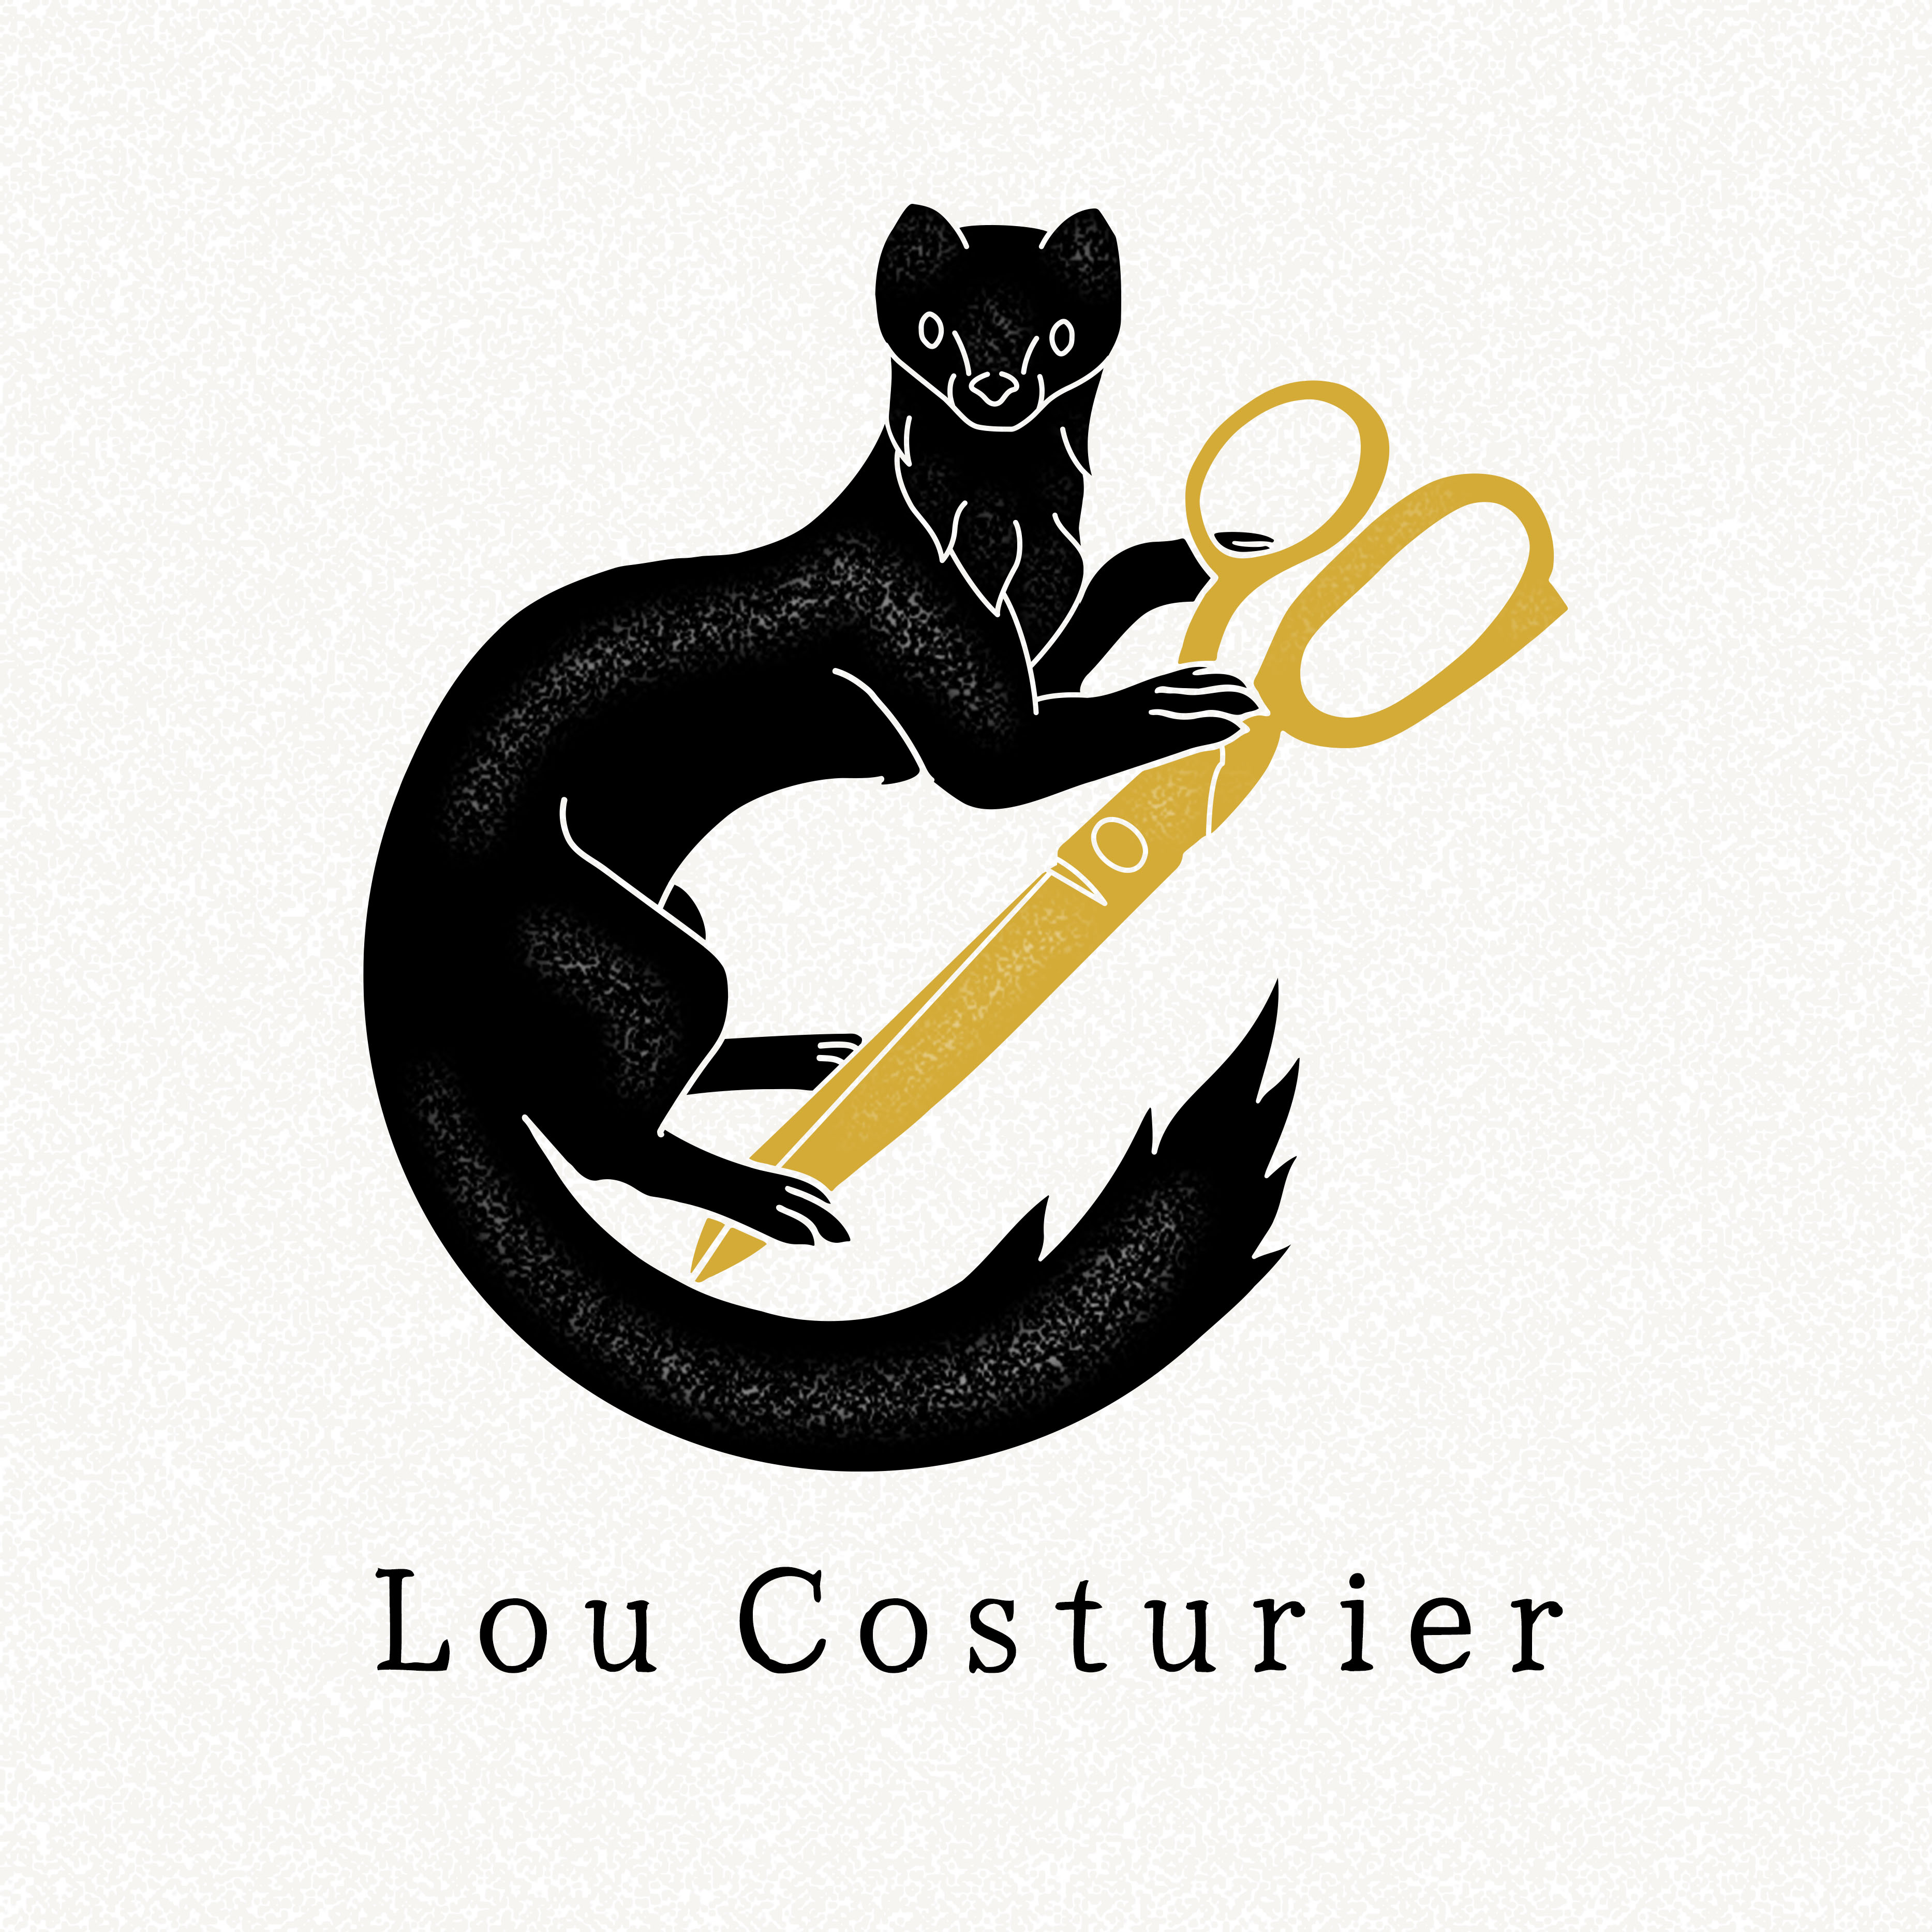 Lou Costurier